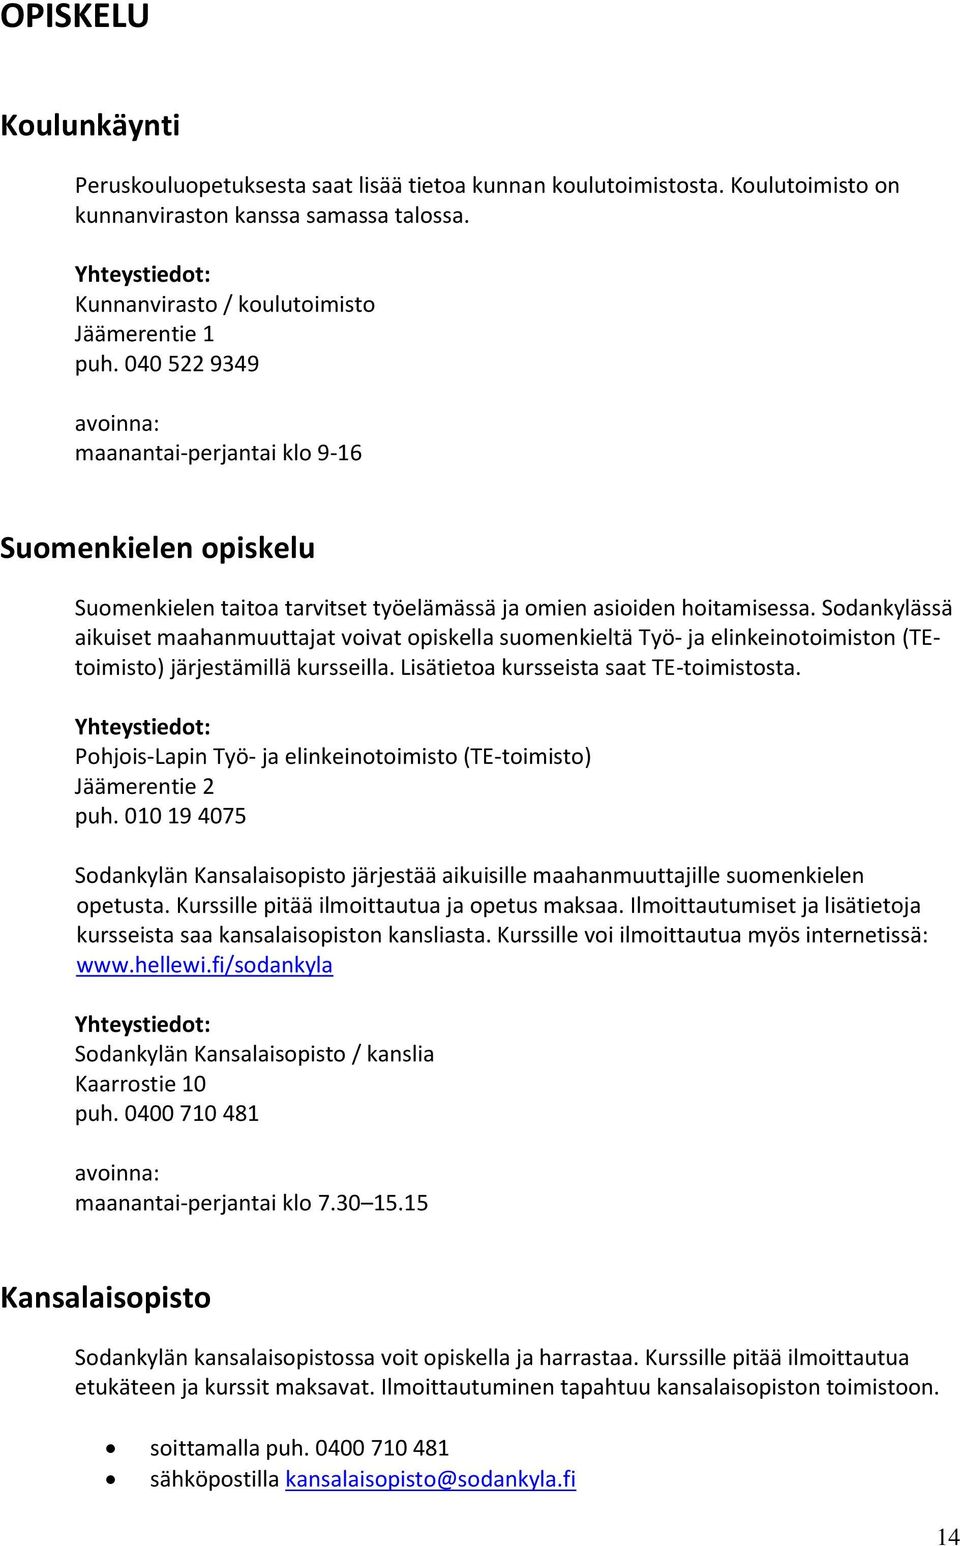 Sodankylässä aikuiset maahanmuuttajat voivat opiskella suomenkieltä Työ- ja elinkeinotoimiston (TEtoimisto) järjestämillä kursseilla. Lisätietoa kursseista saat TE-toimistosta.